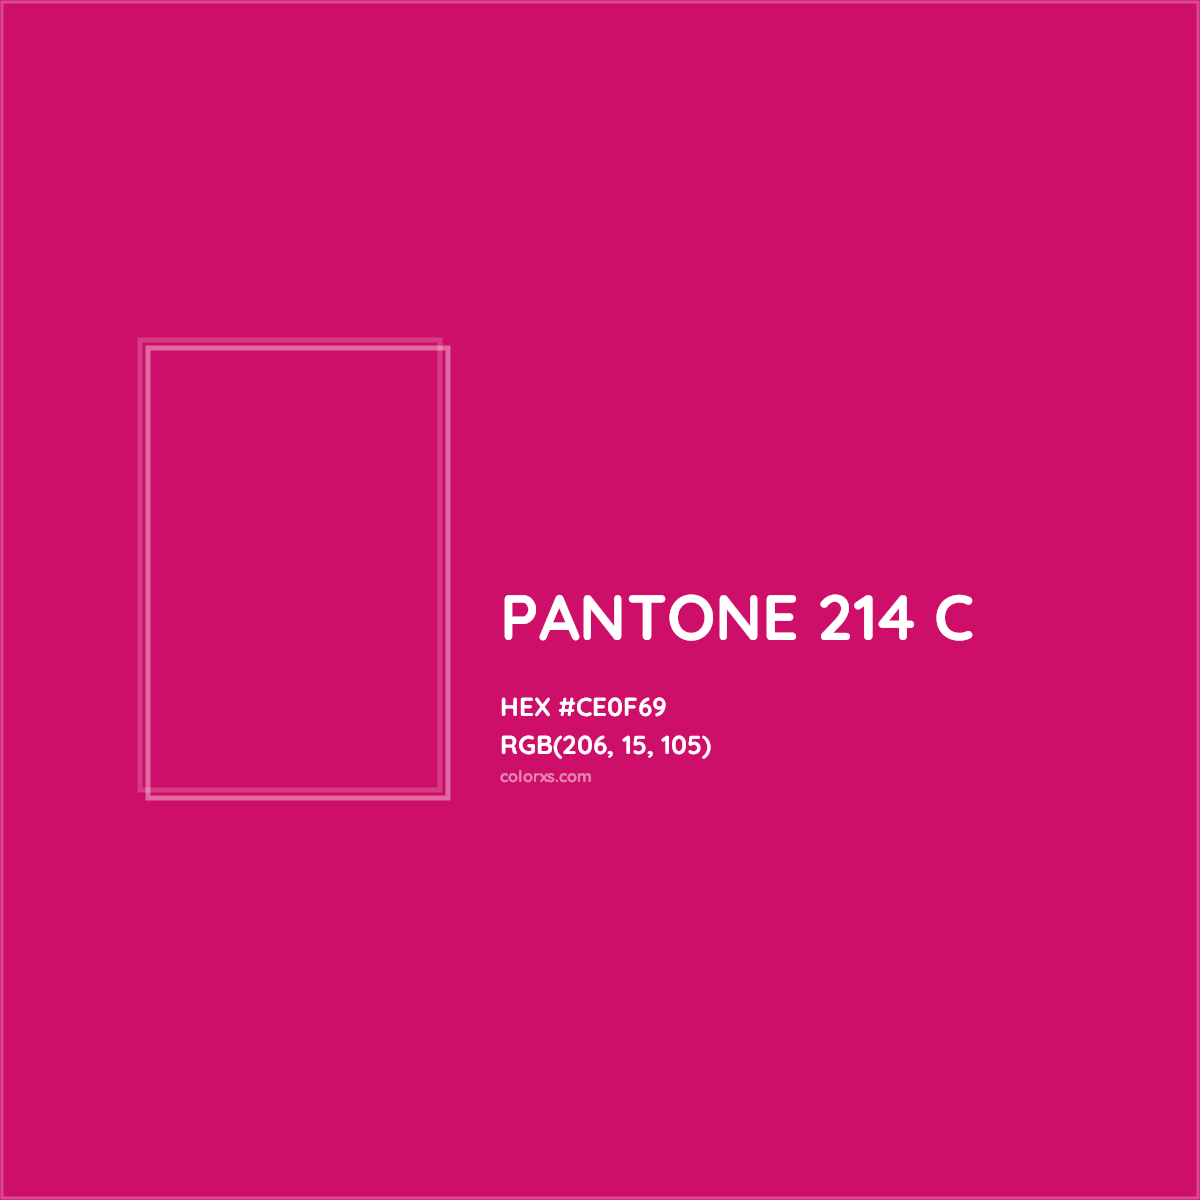 HEX #CE0F69 PANTONE 214 C CMS Pantone PMS - Color Code